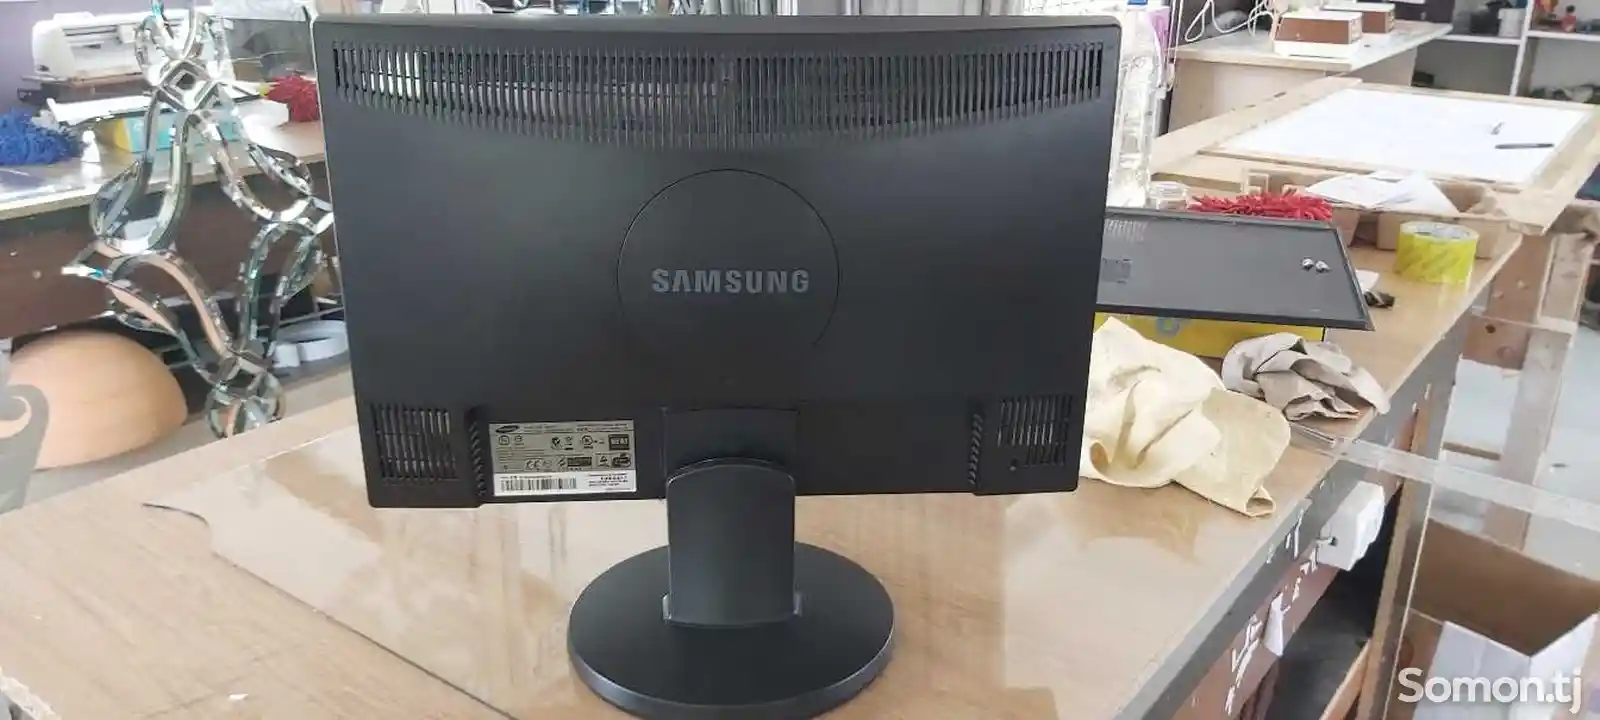 Mонитор Samsung-3